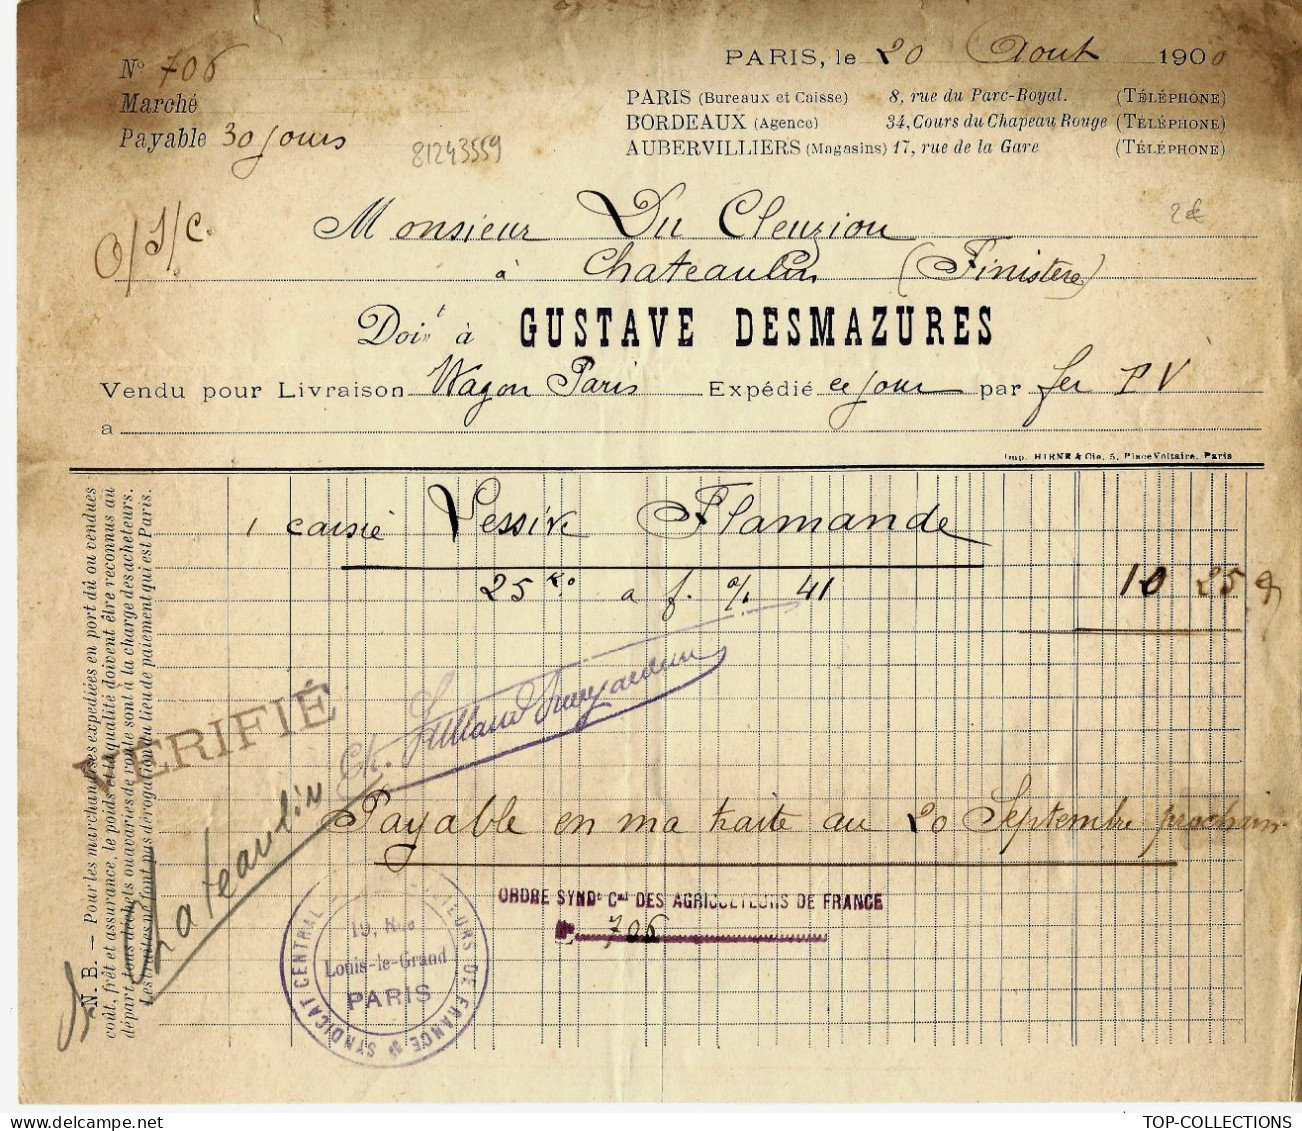 1900 ENTETE Gust. Desmazures Paris TRANSPORT ROULAGE LETTRE DE VOITURE Caisse Lessive Flamande > Du Cleuziou Chateaulin - 1900 – 1949